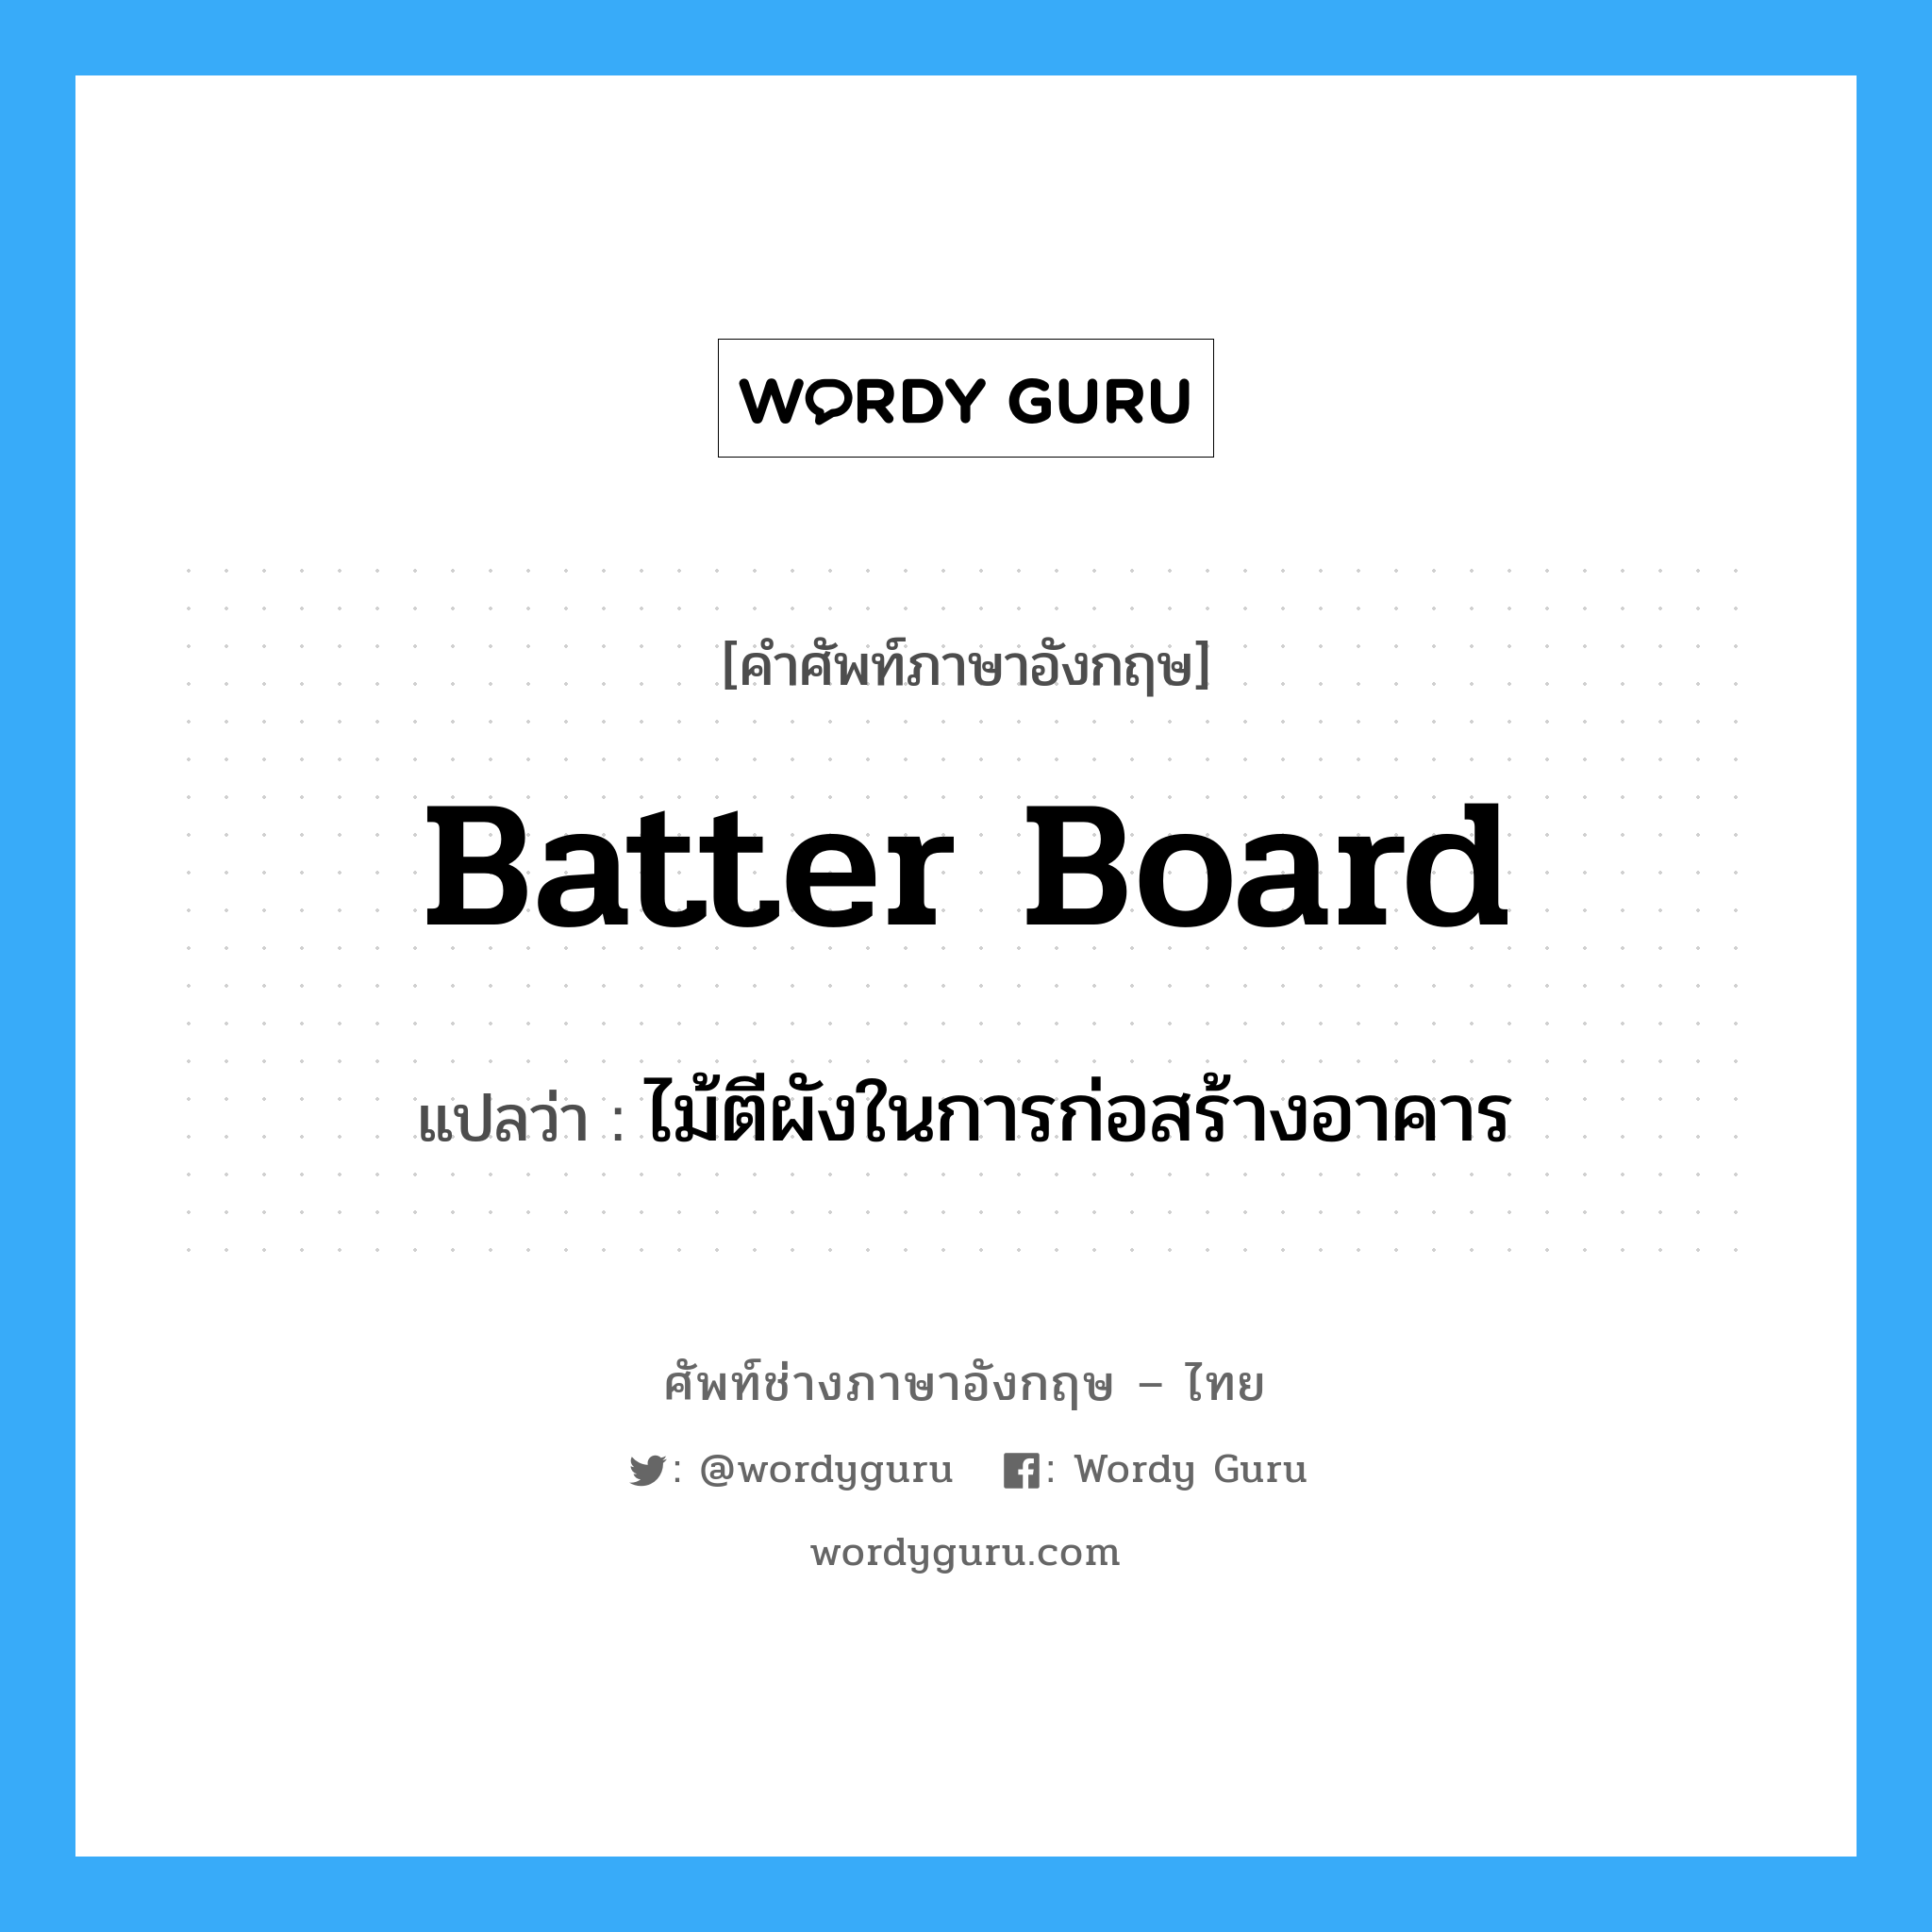 batter board แปลว่า?, คำศัพท์ช่างภาษาอังกฤษ - ไทย batter board คำศัพท์ภาษาอังกฤษ batter board แปลว่า ไม้ตีผังในการก่อสร้างอาคาร